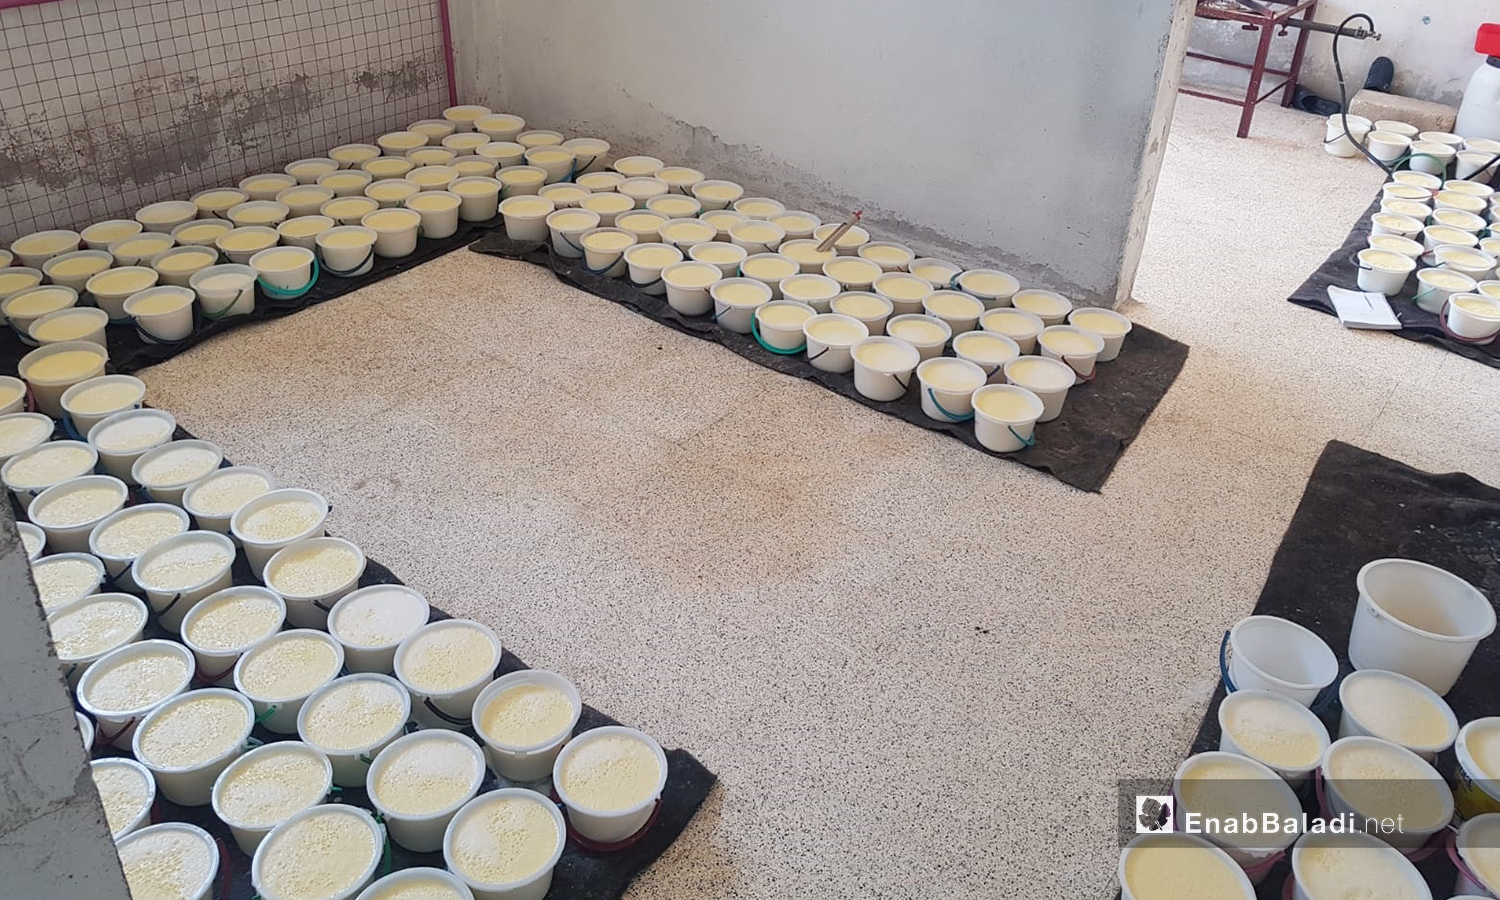 سكب اللبن داخل الأواني للتخثر في مراحل صناعة الجبنة في بلدة الدانا بريف إدلب - 4 حزيران 2020 (عنب بلدي/شادية تعتاع)